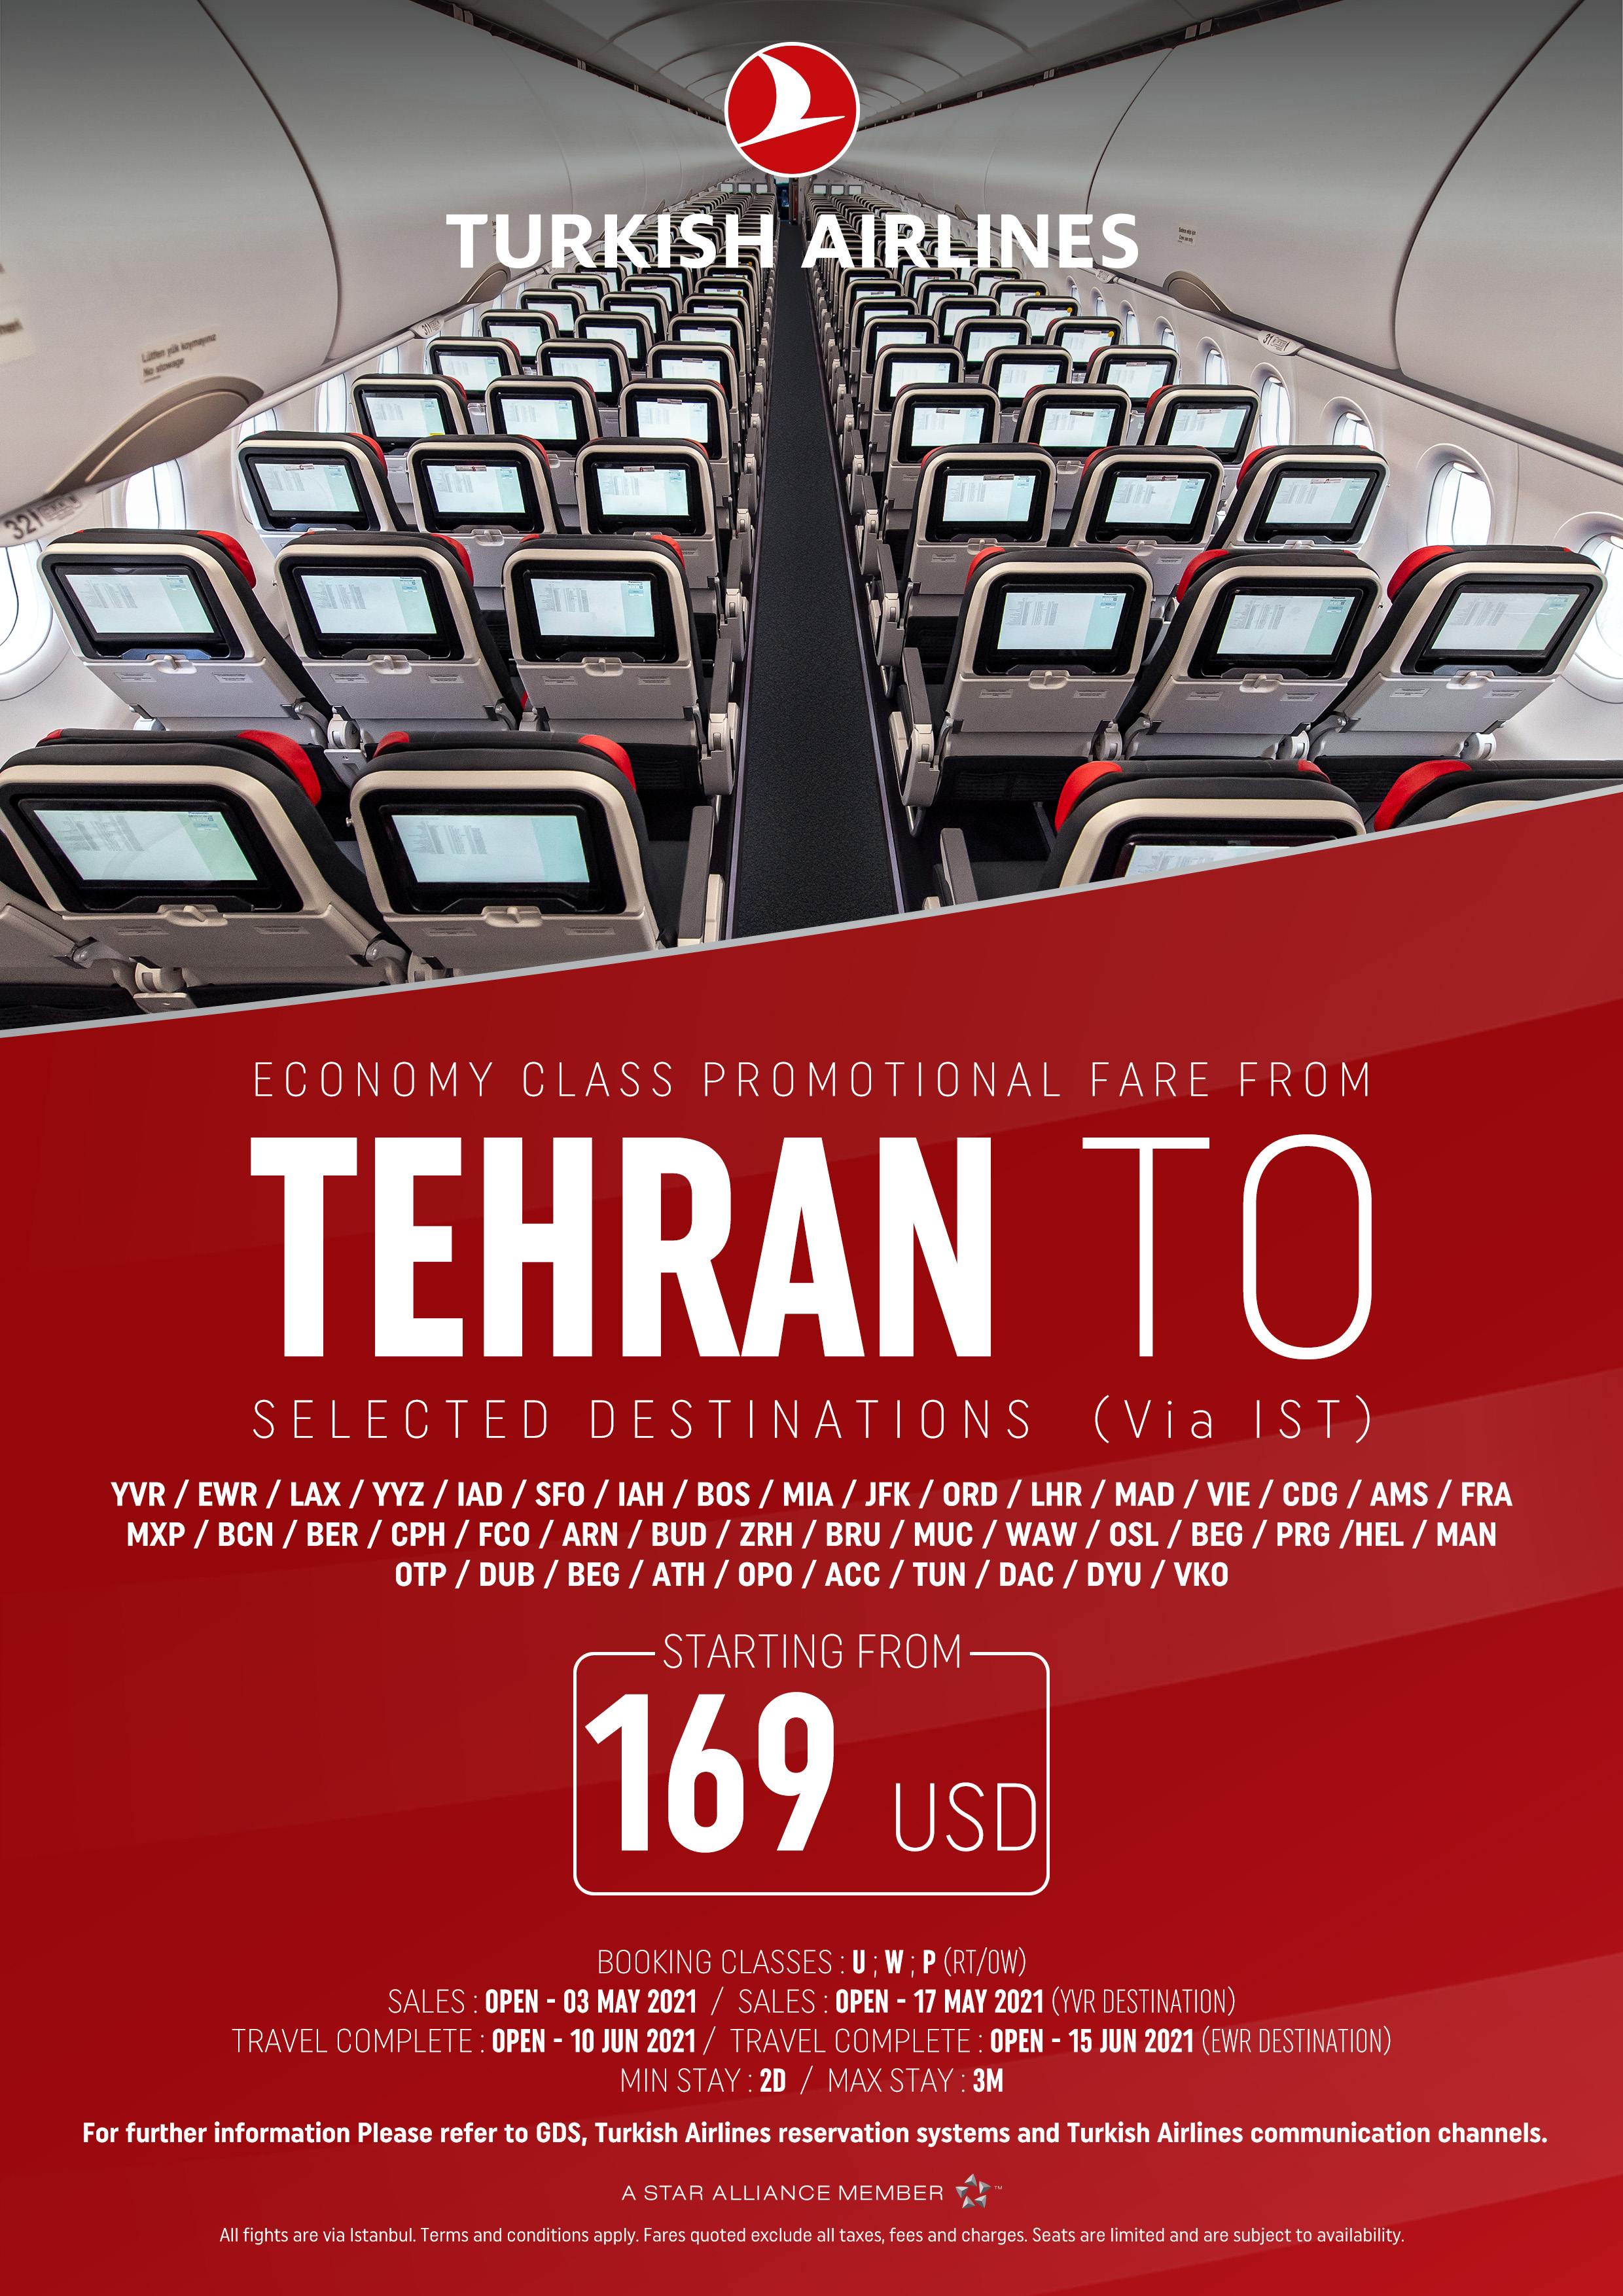 بخشنامه و اطلاعیه   هواپیمایی ترکیش درباره نرخهای ویژه از تهران در کلاس اکونومی تا تاریخ 17 می 2021